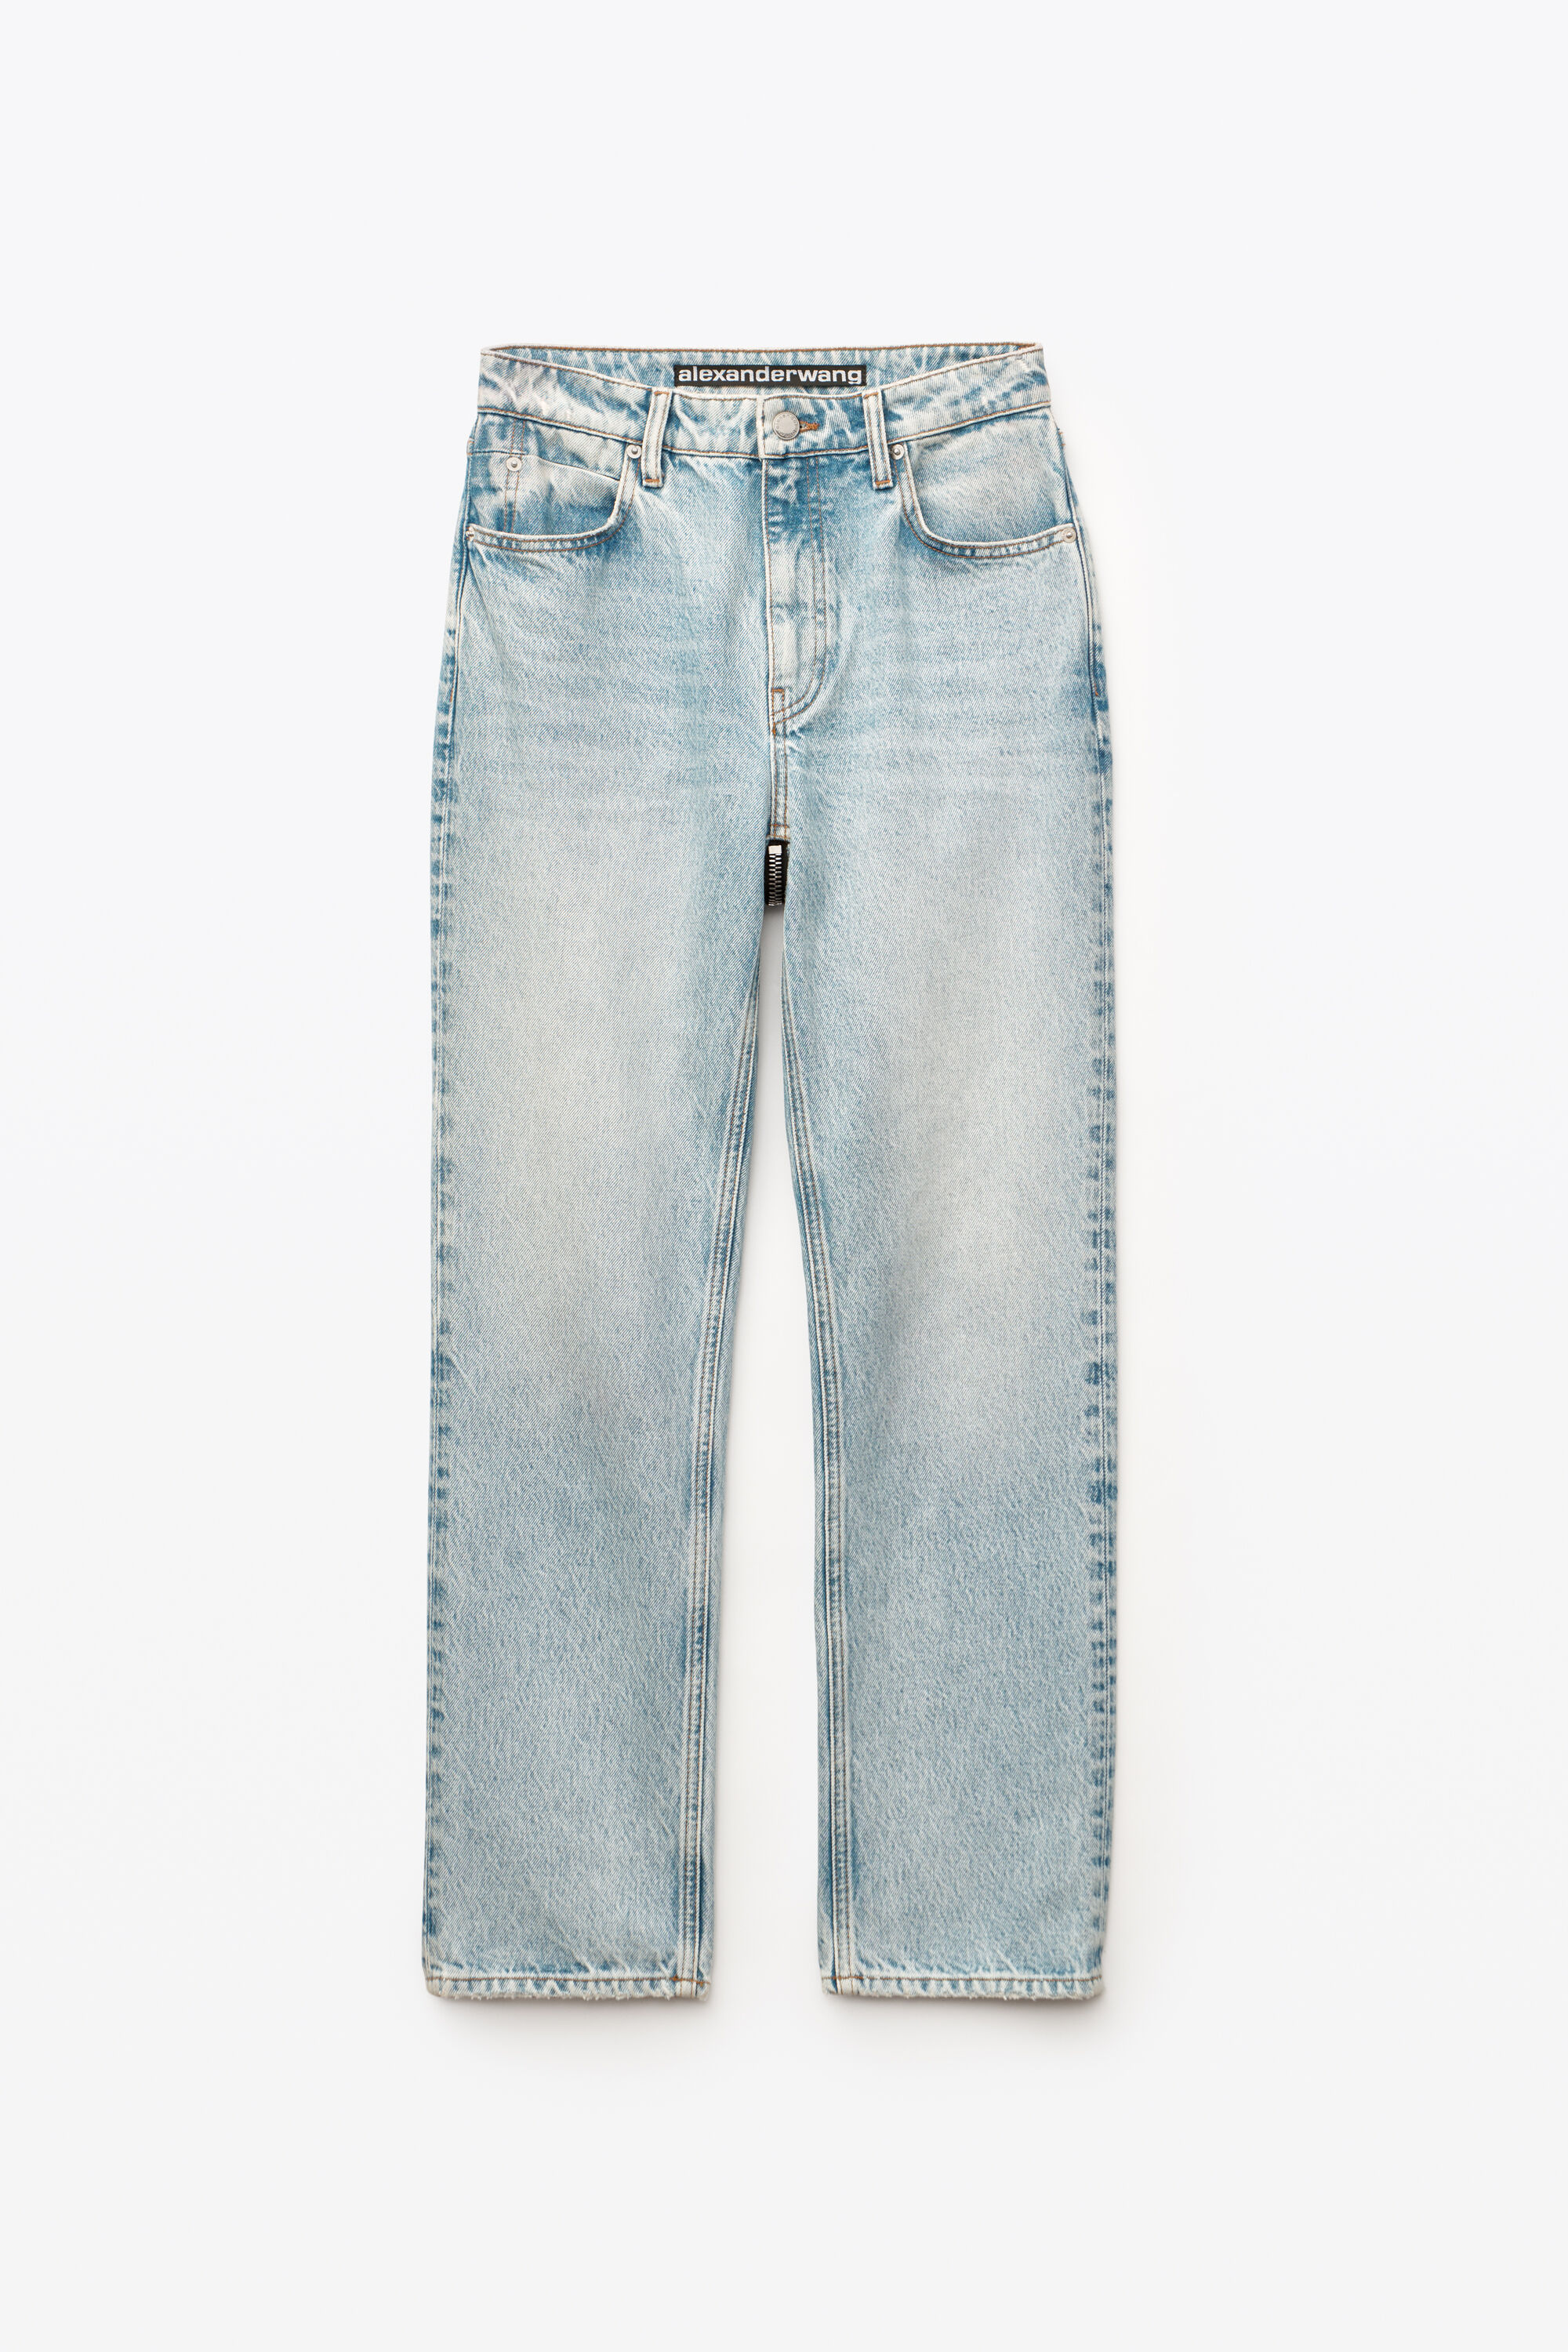 alexander wang zipper jeans